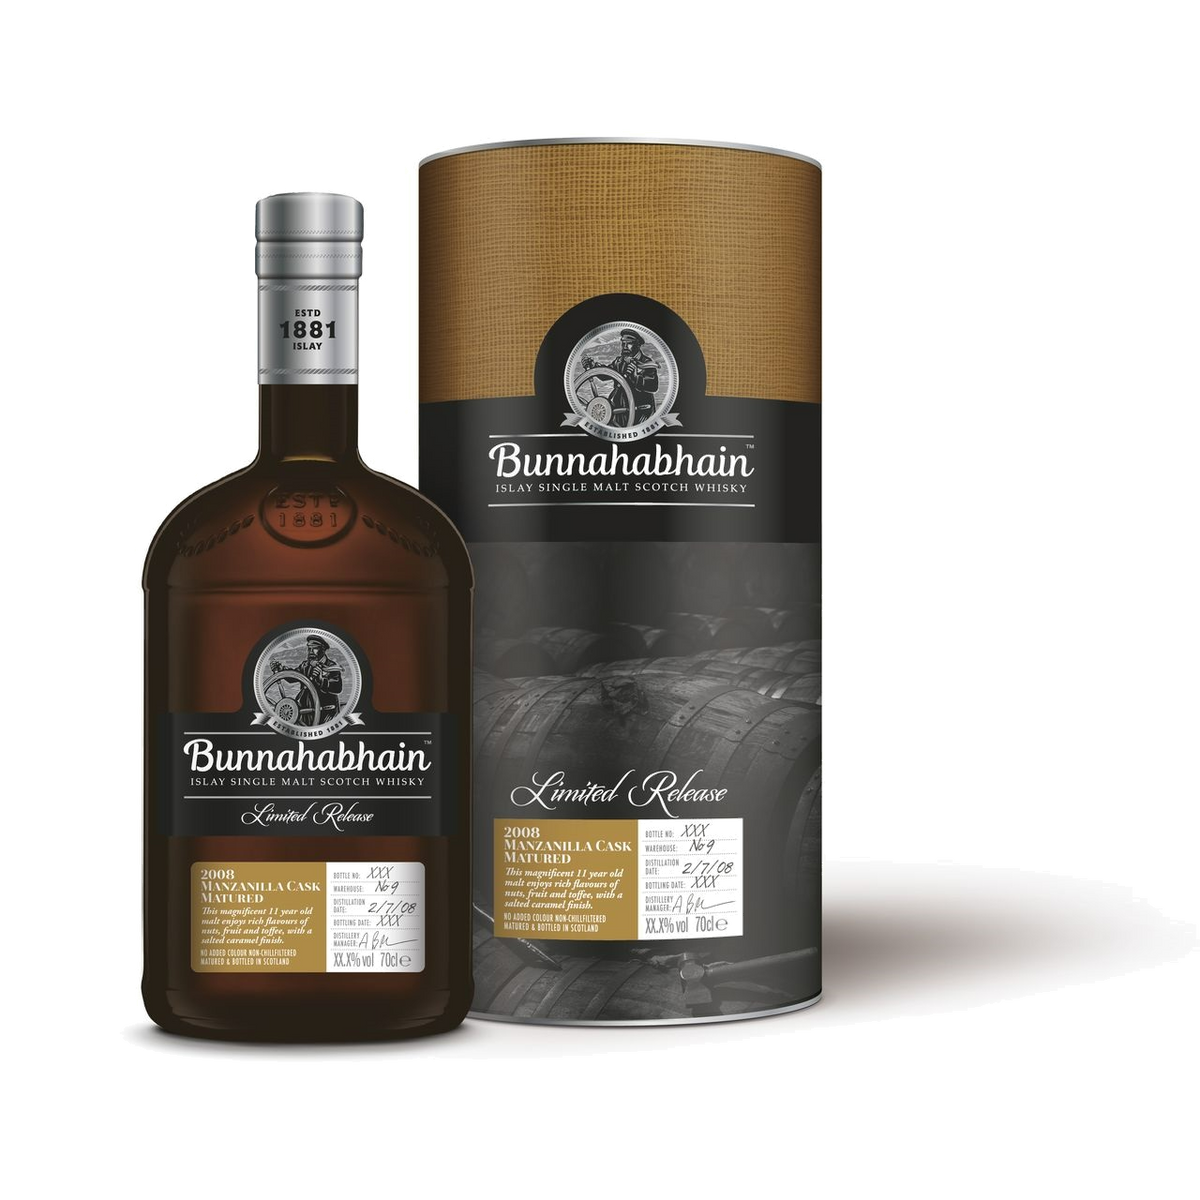 Bunnahabhain 2008 Manzanilla Cask Matured 11 Year Old Single Malt Scotch Whisky 700ml